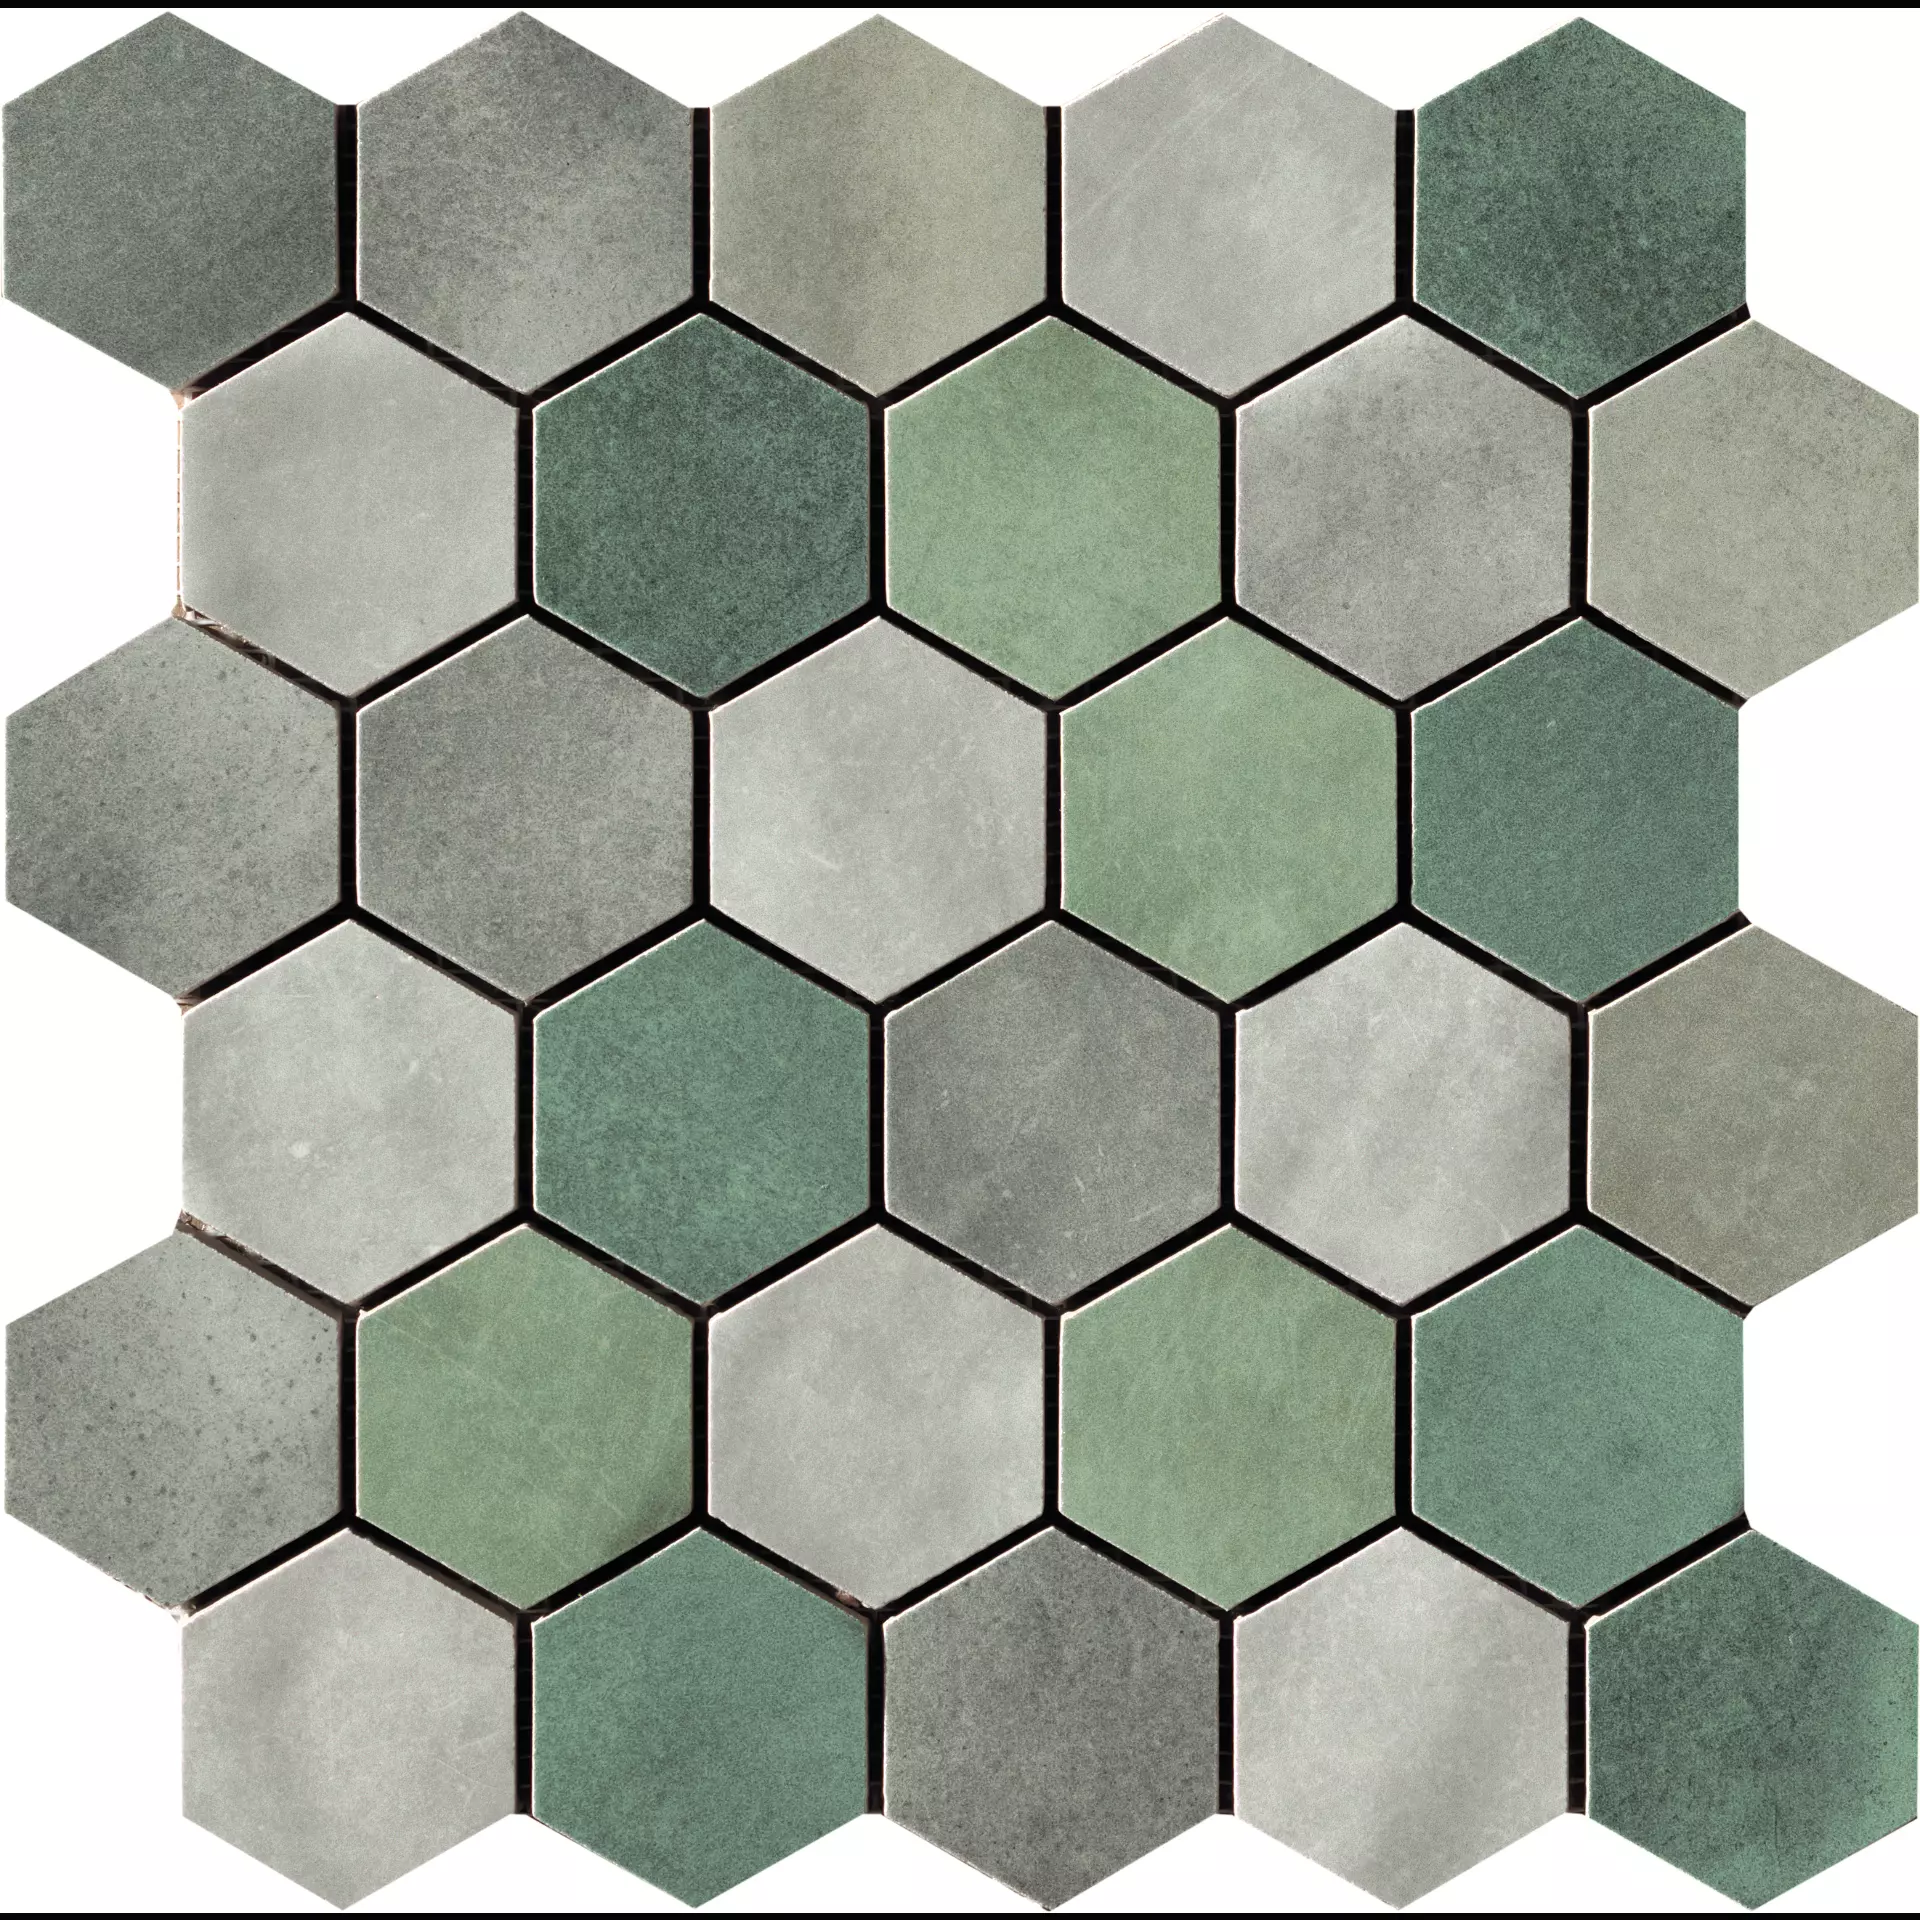 CIR Materia Prima Hunter Green Naturale Mosaik Hexagon Mix 1069920 27x27cm